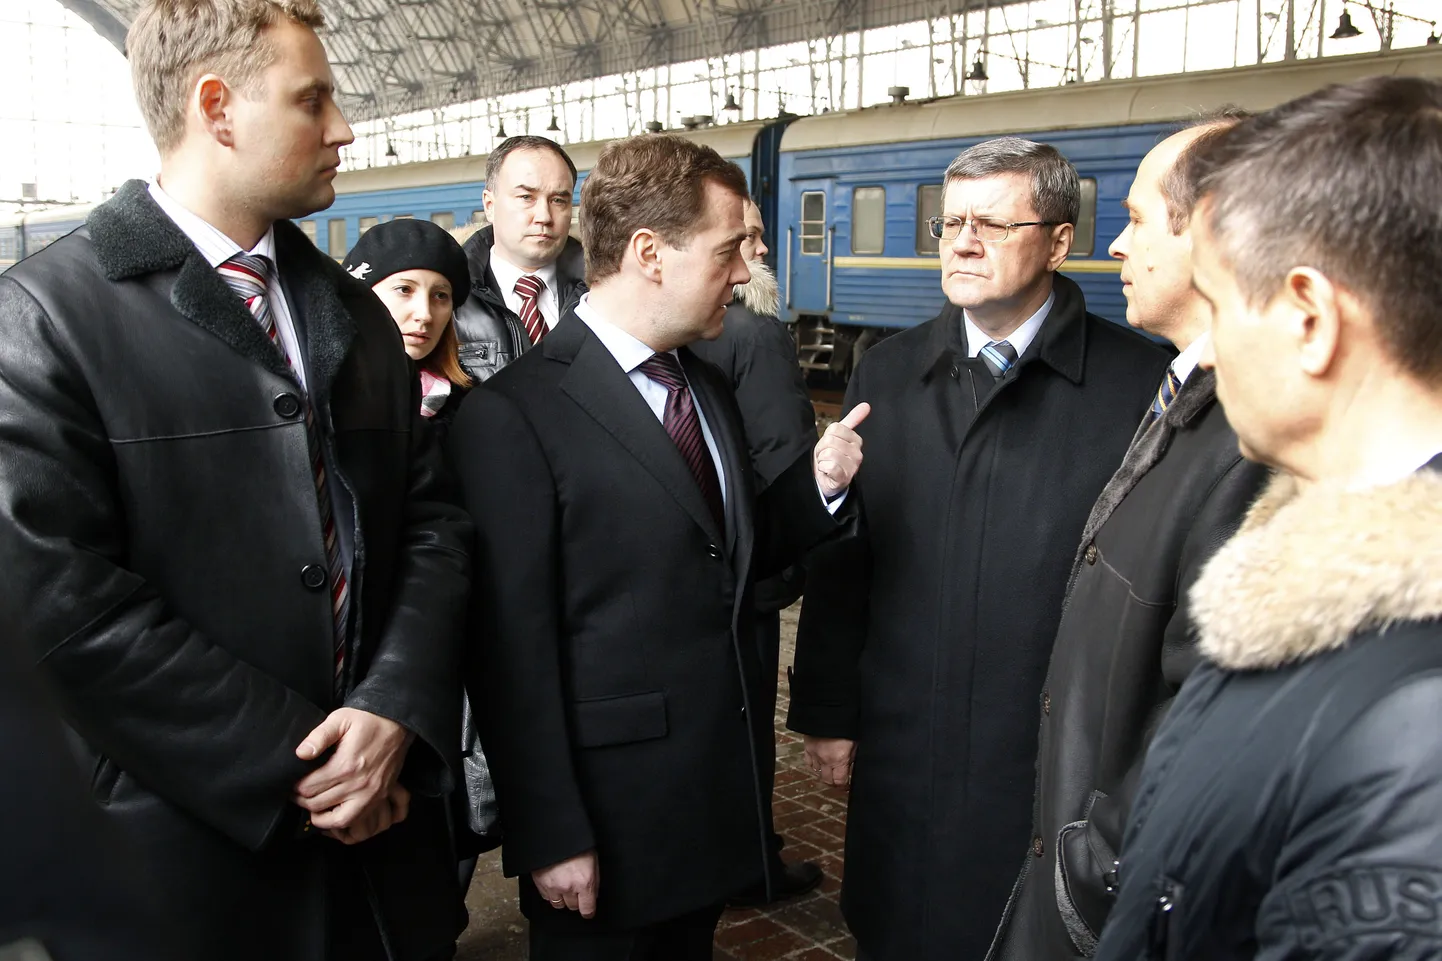 Медведев провел вчера проверку на Киевском вокзале Москвы и остался недоволен мерами безопасности.